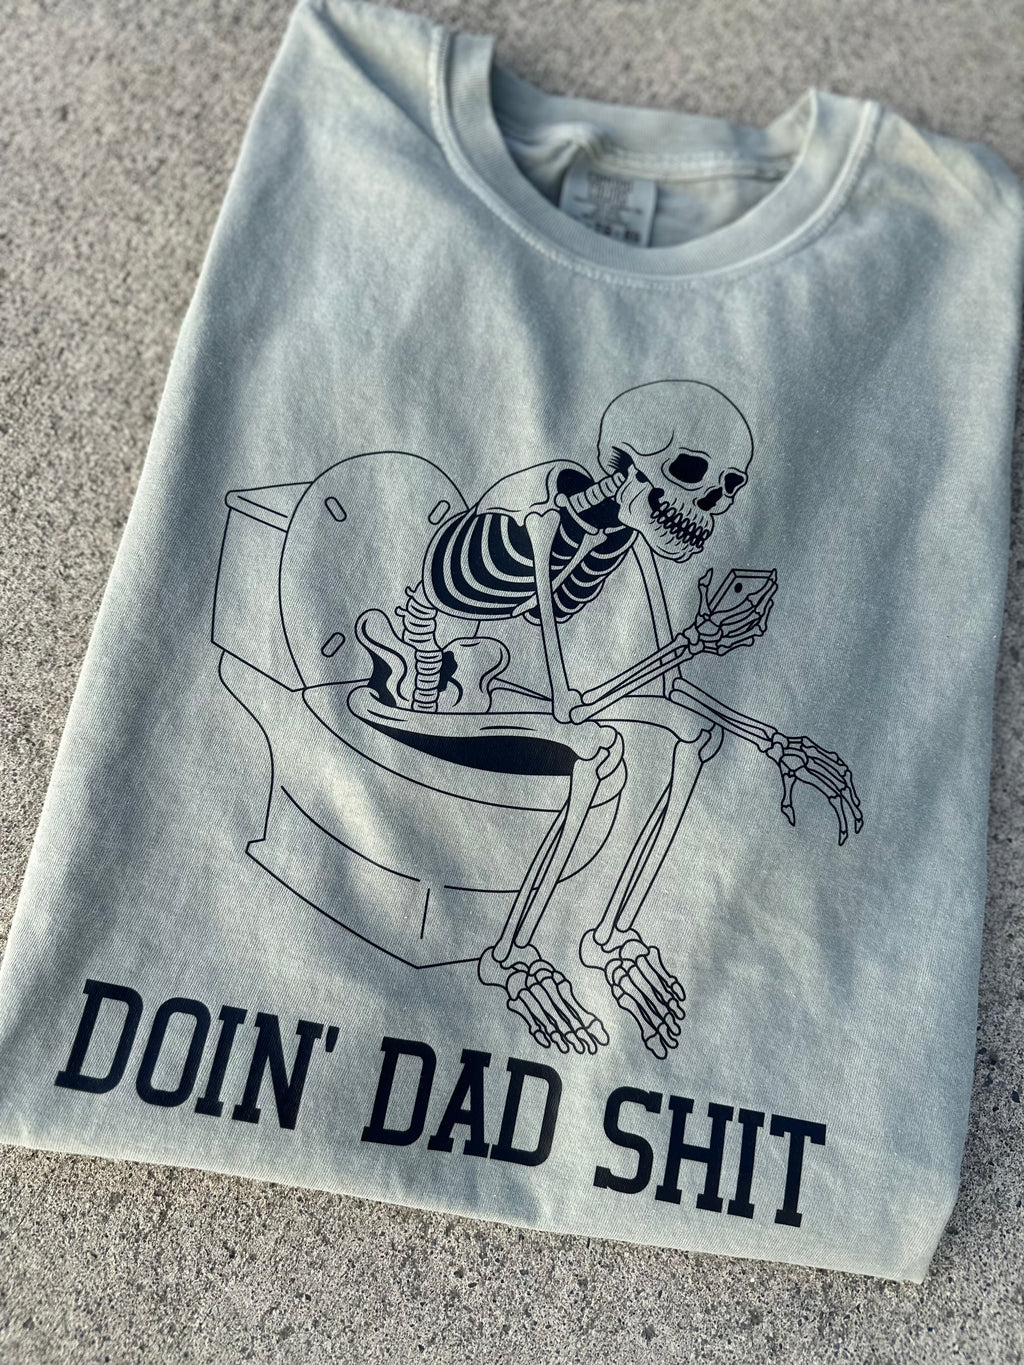 Doin dad shit